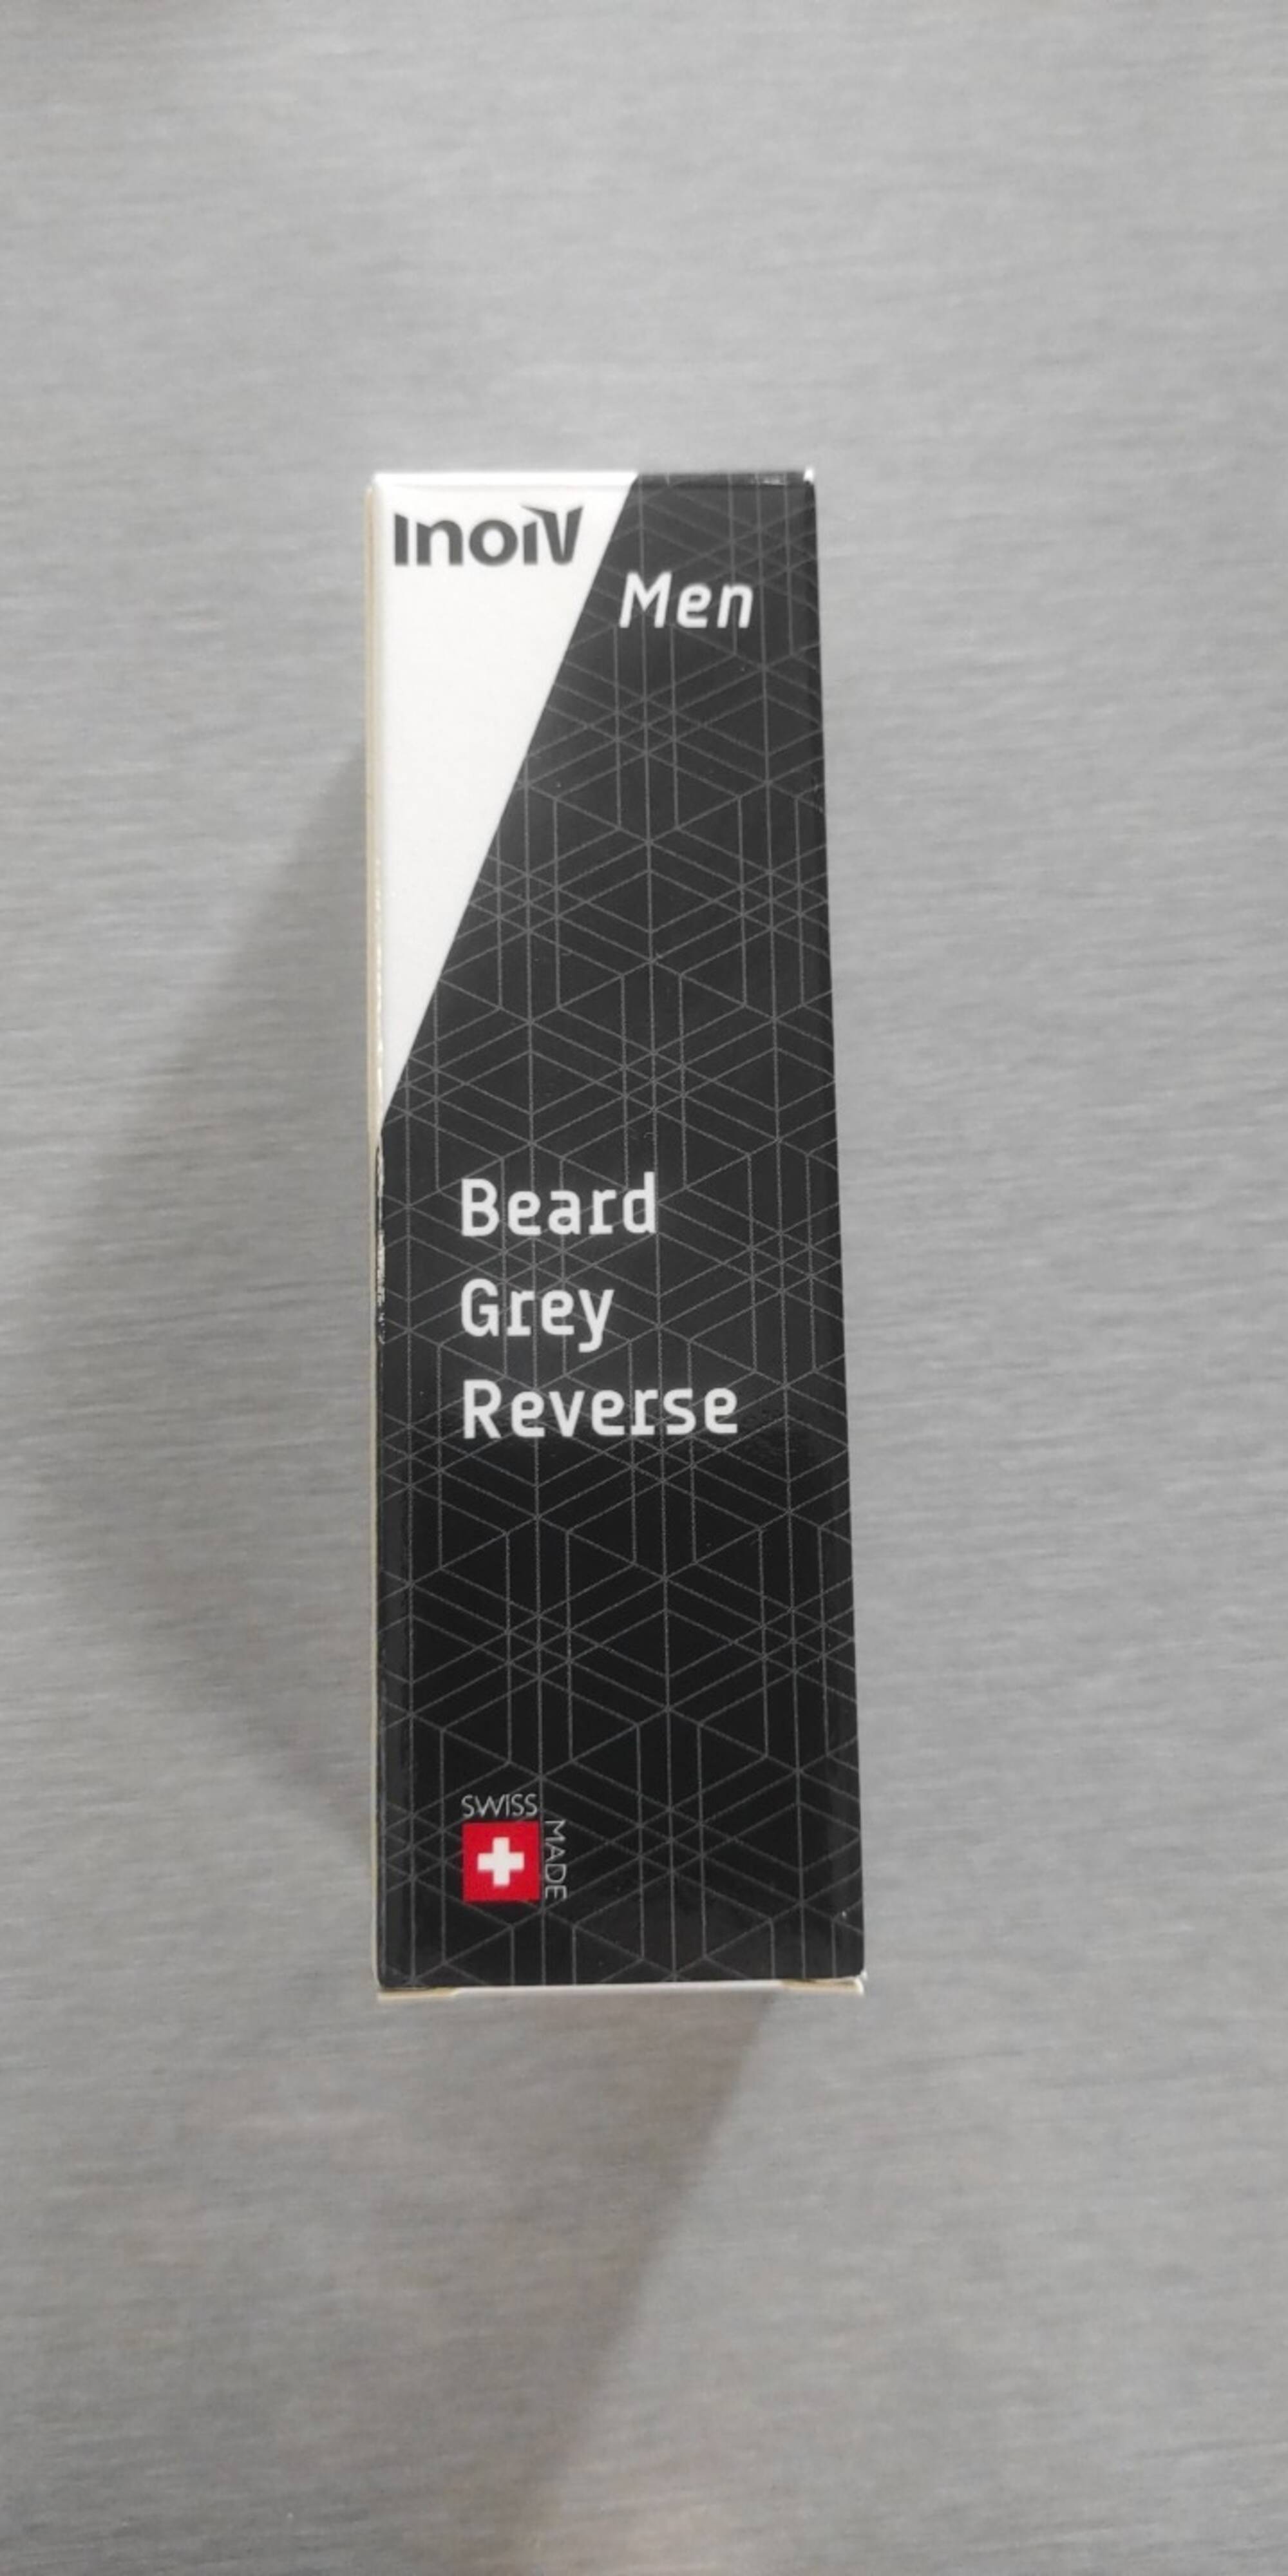 INOIV - Beard grey reverse men